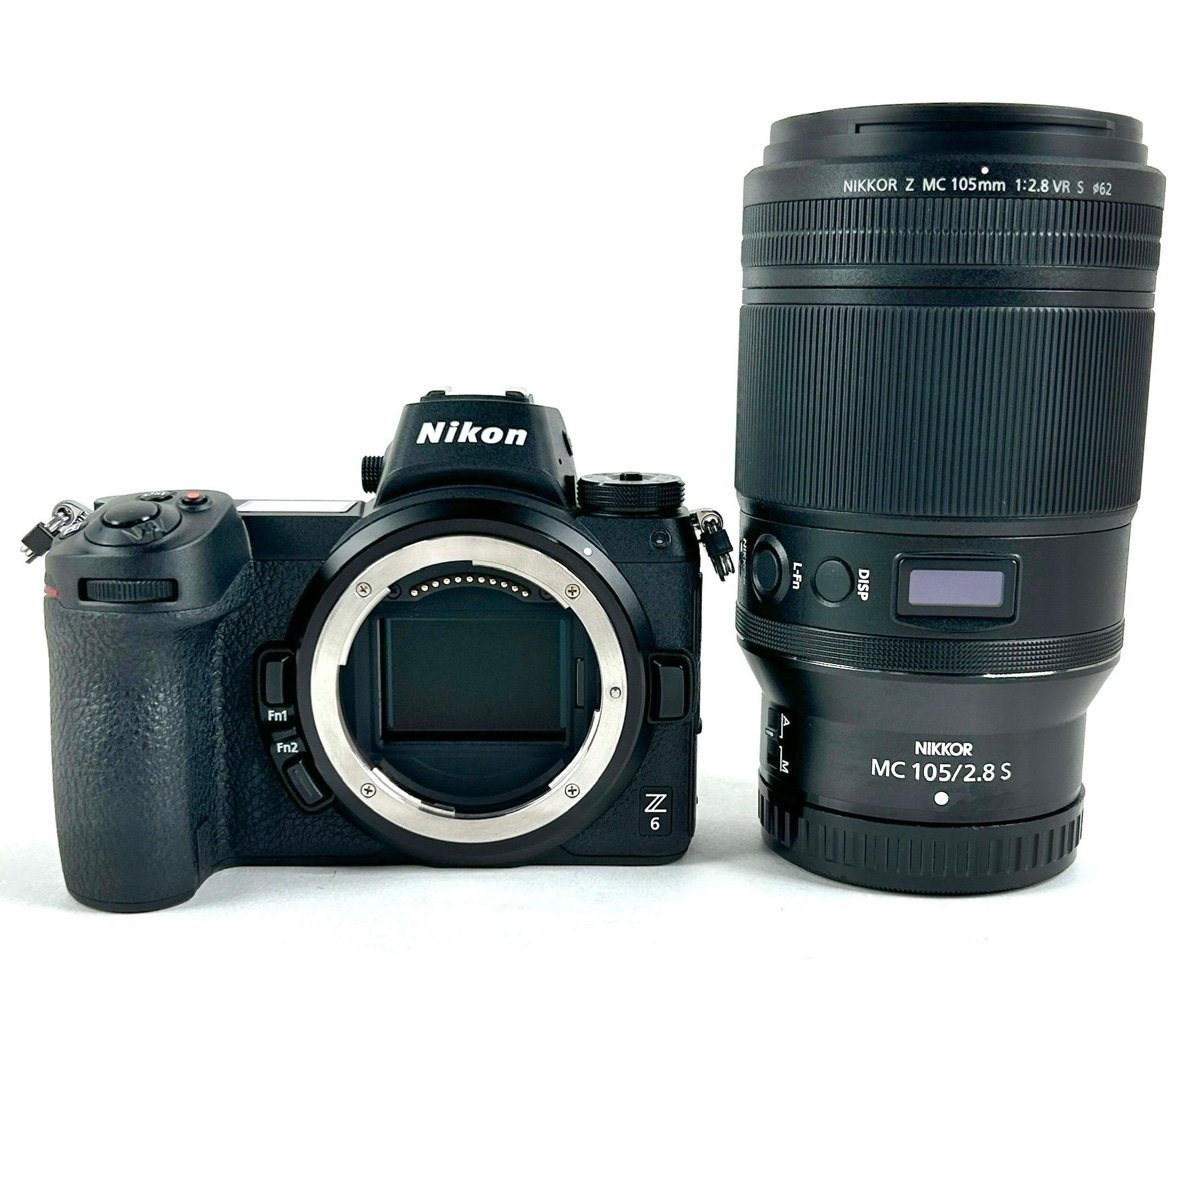 ニコン Nikon Z6 + NIKKOR Z MC 105mm F2.8 VR S マクロ デジタル ミラーレス 一眼カメラ 【中古】_バイセル 31052_1